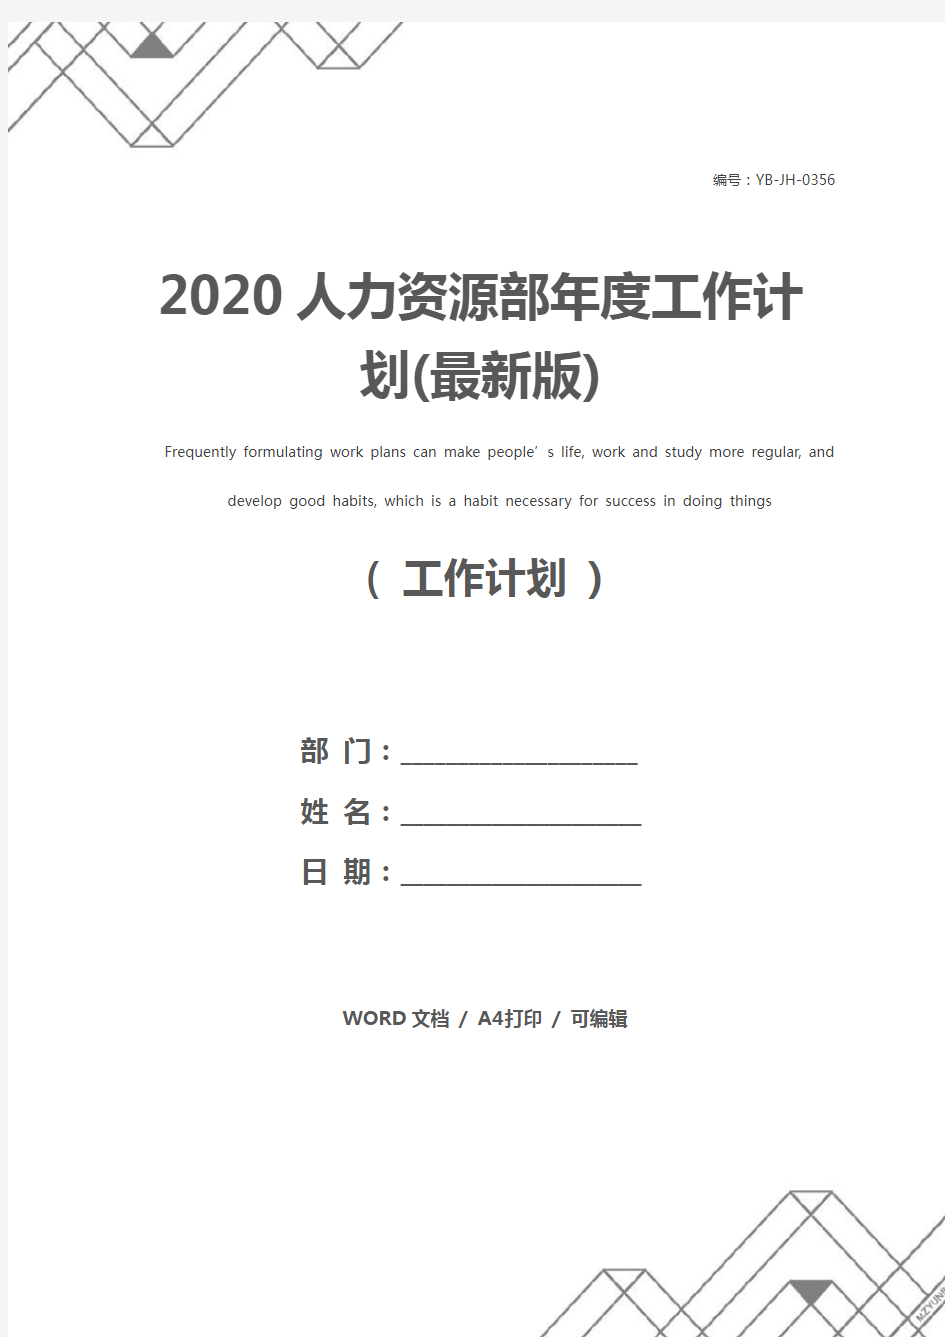 2020人力资源部年度工作计划(最新版)